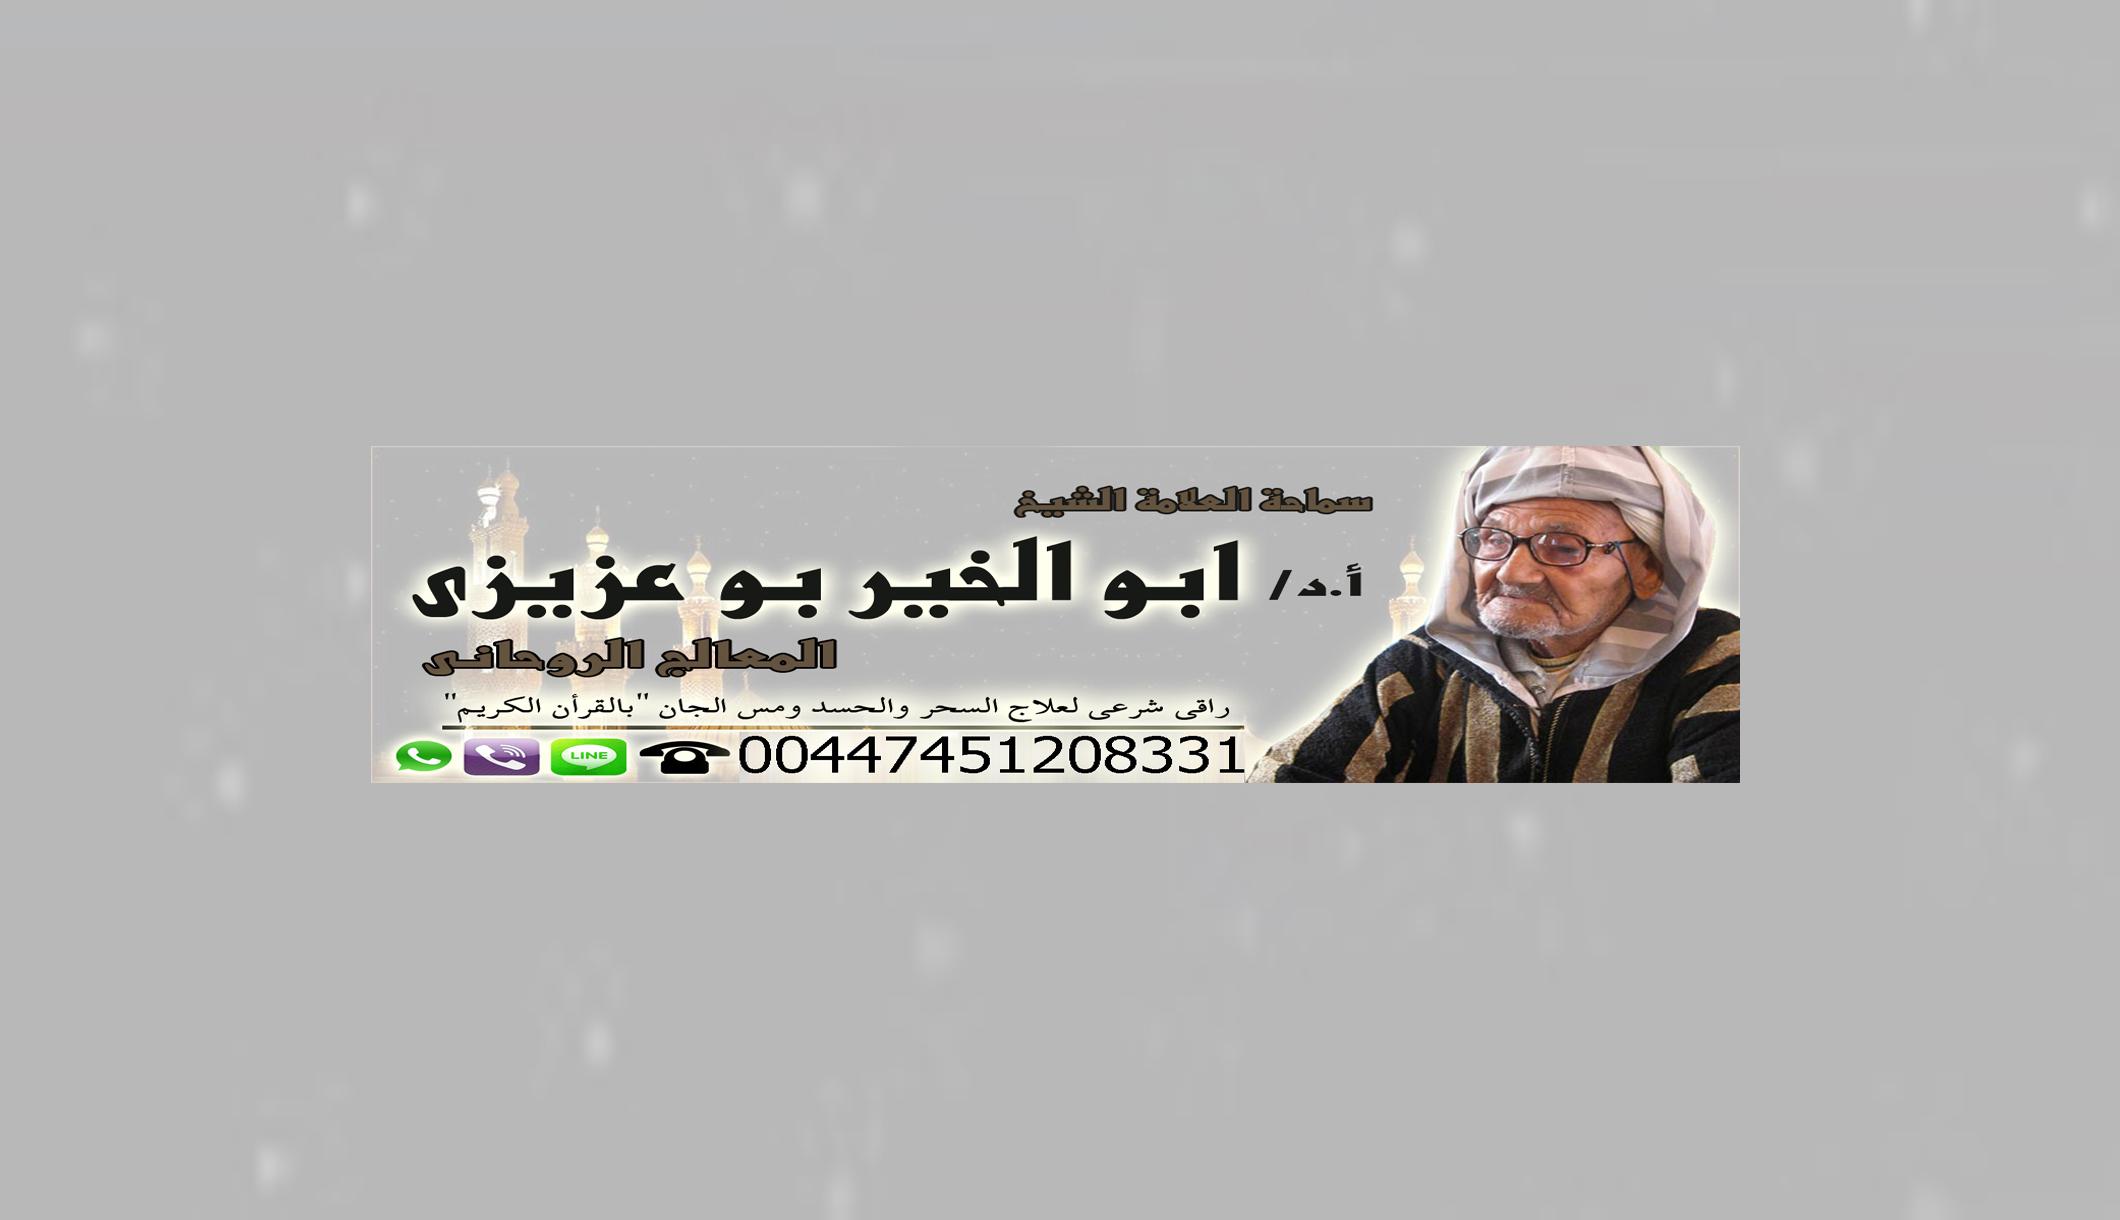 الشيخ الروحاني/ أبو الخير بو عزيزي | 00447451208331 966410554